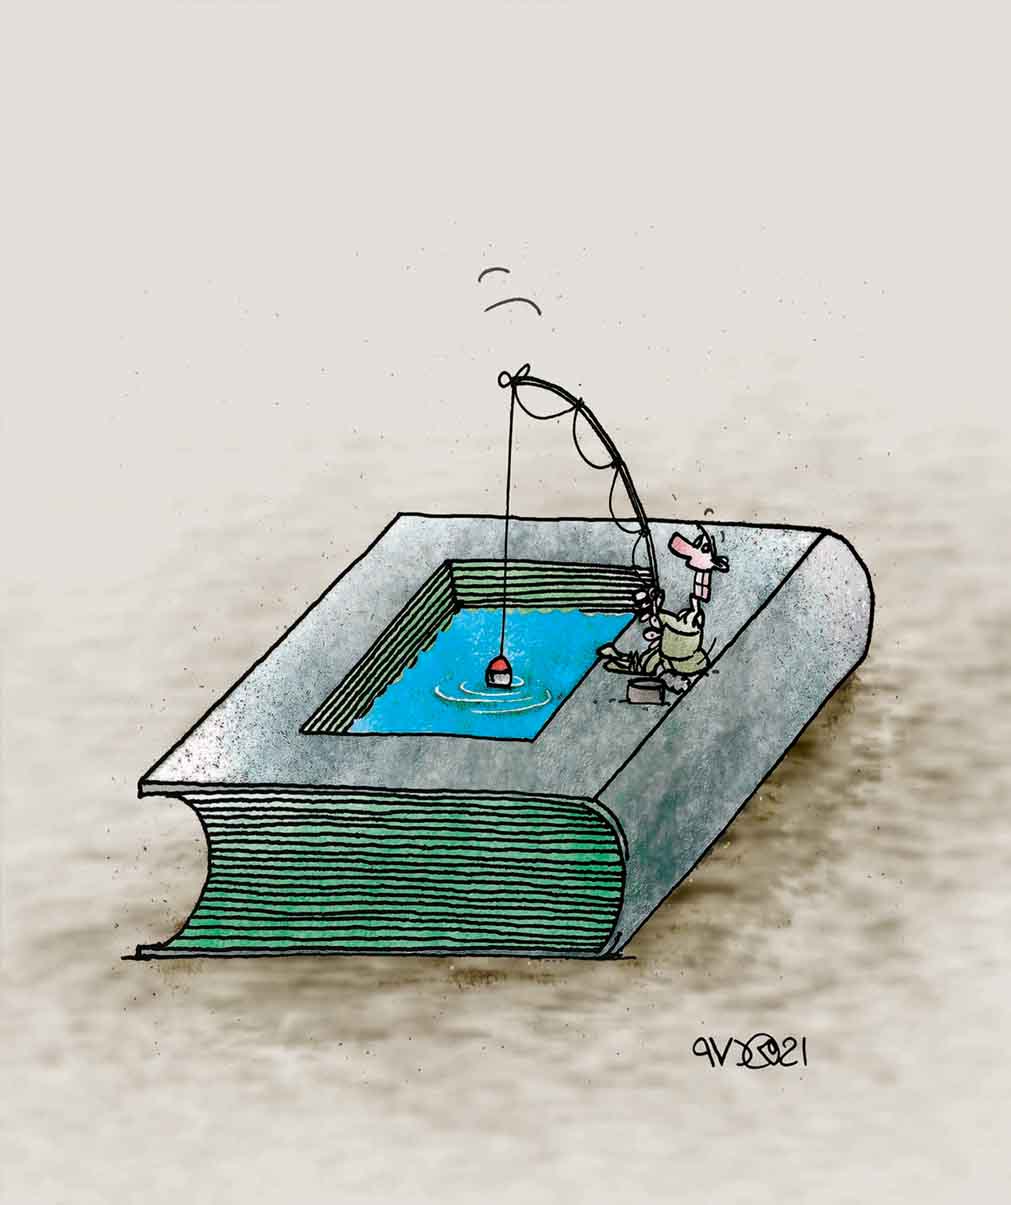 Egypt Cartoon .. Cartoon by Ahmad Reza Sohrabi - Iran